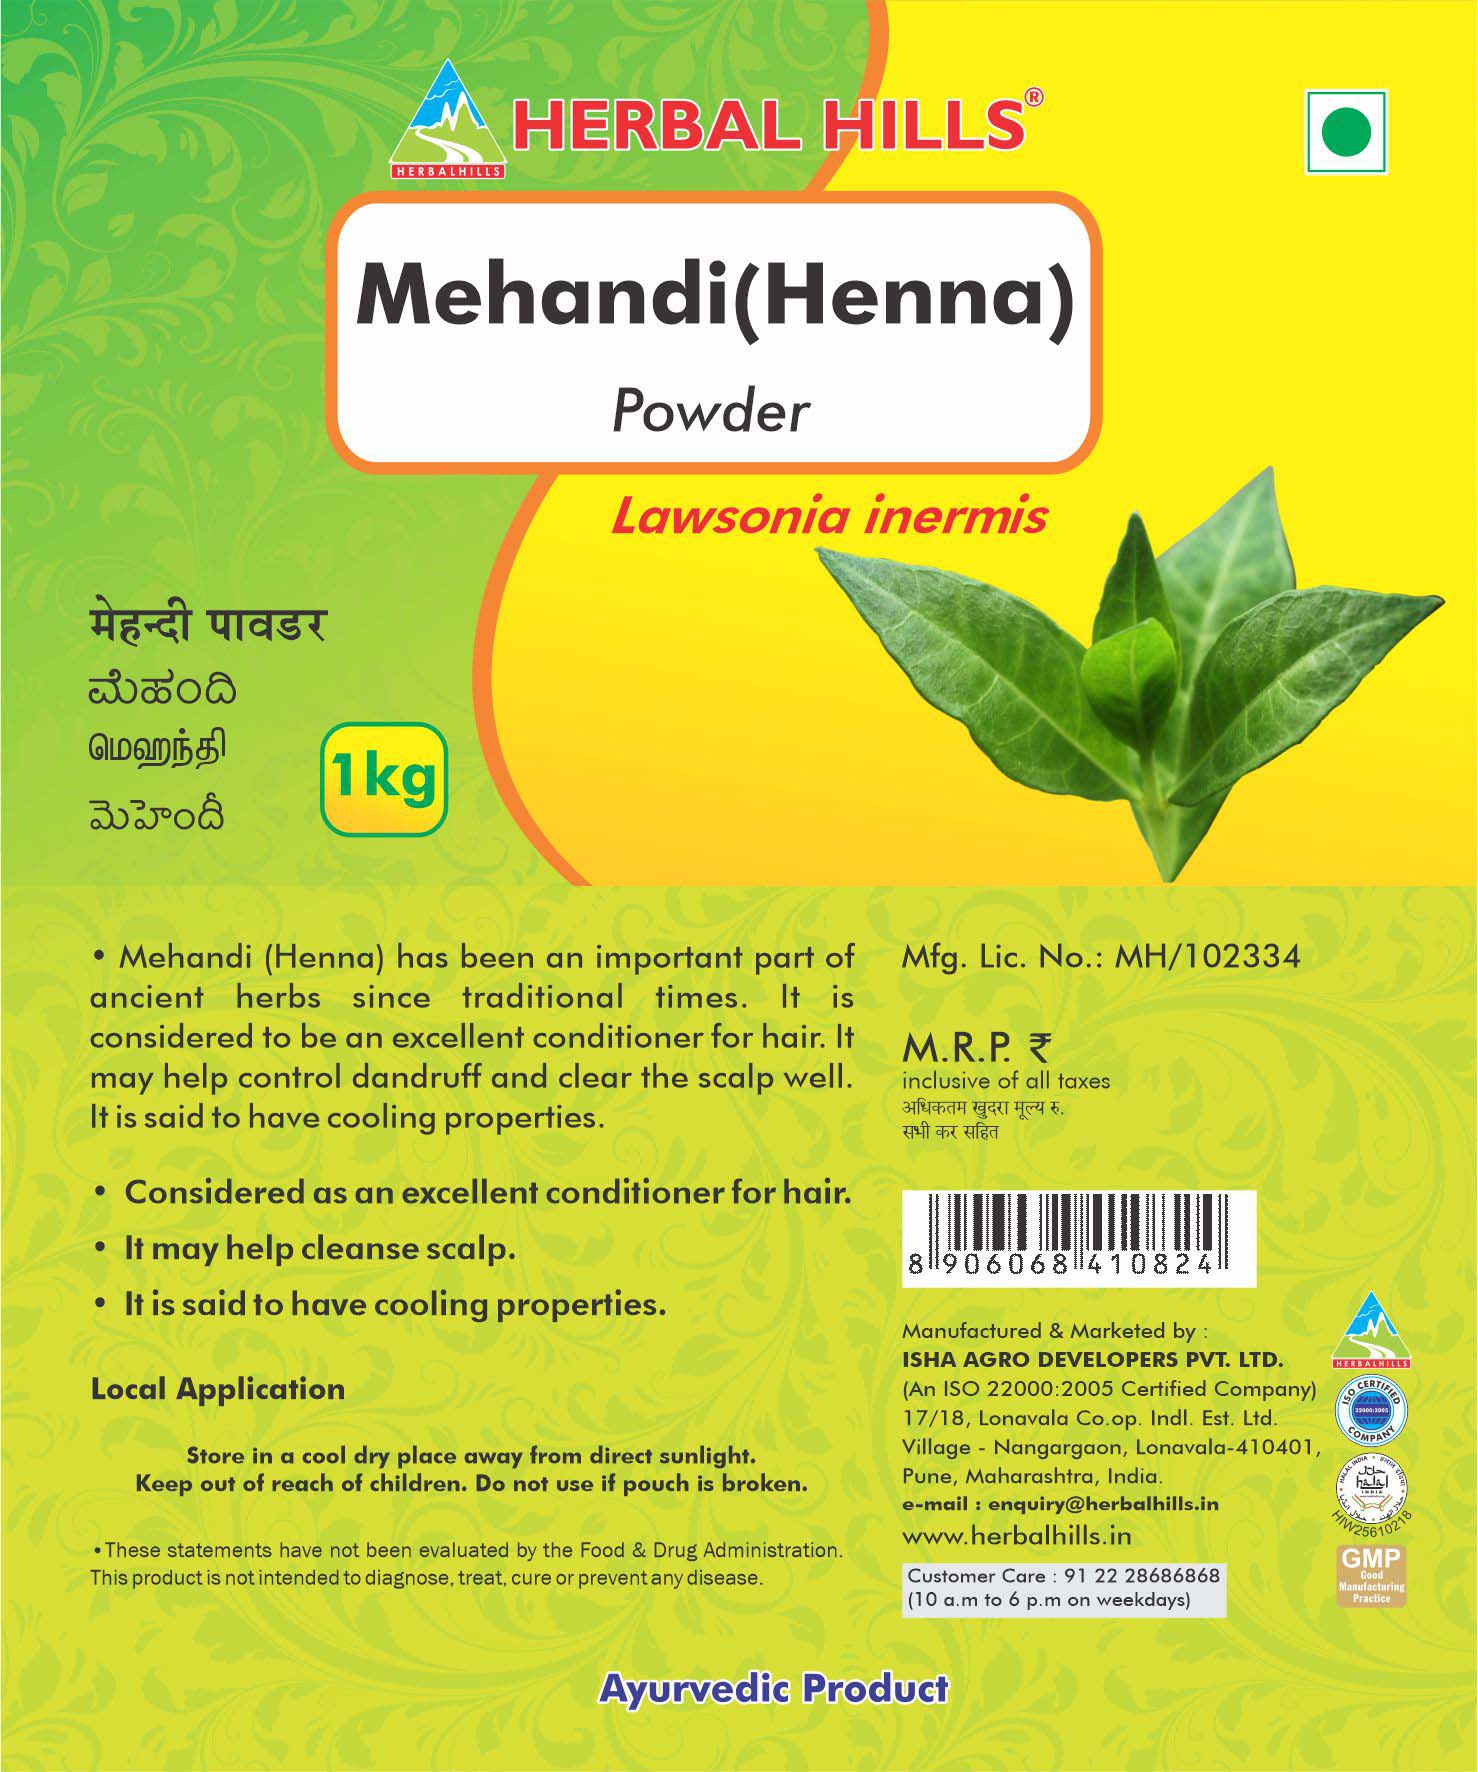 Buy Herbal Hills Mehandi powder at Best Price Online